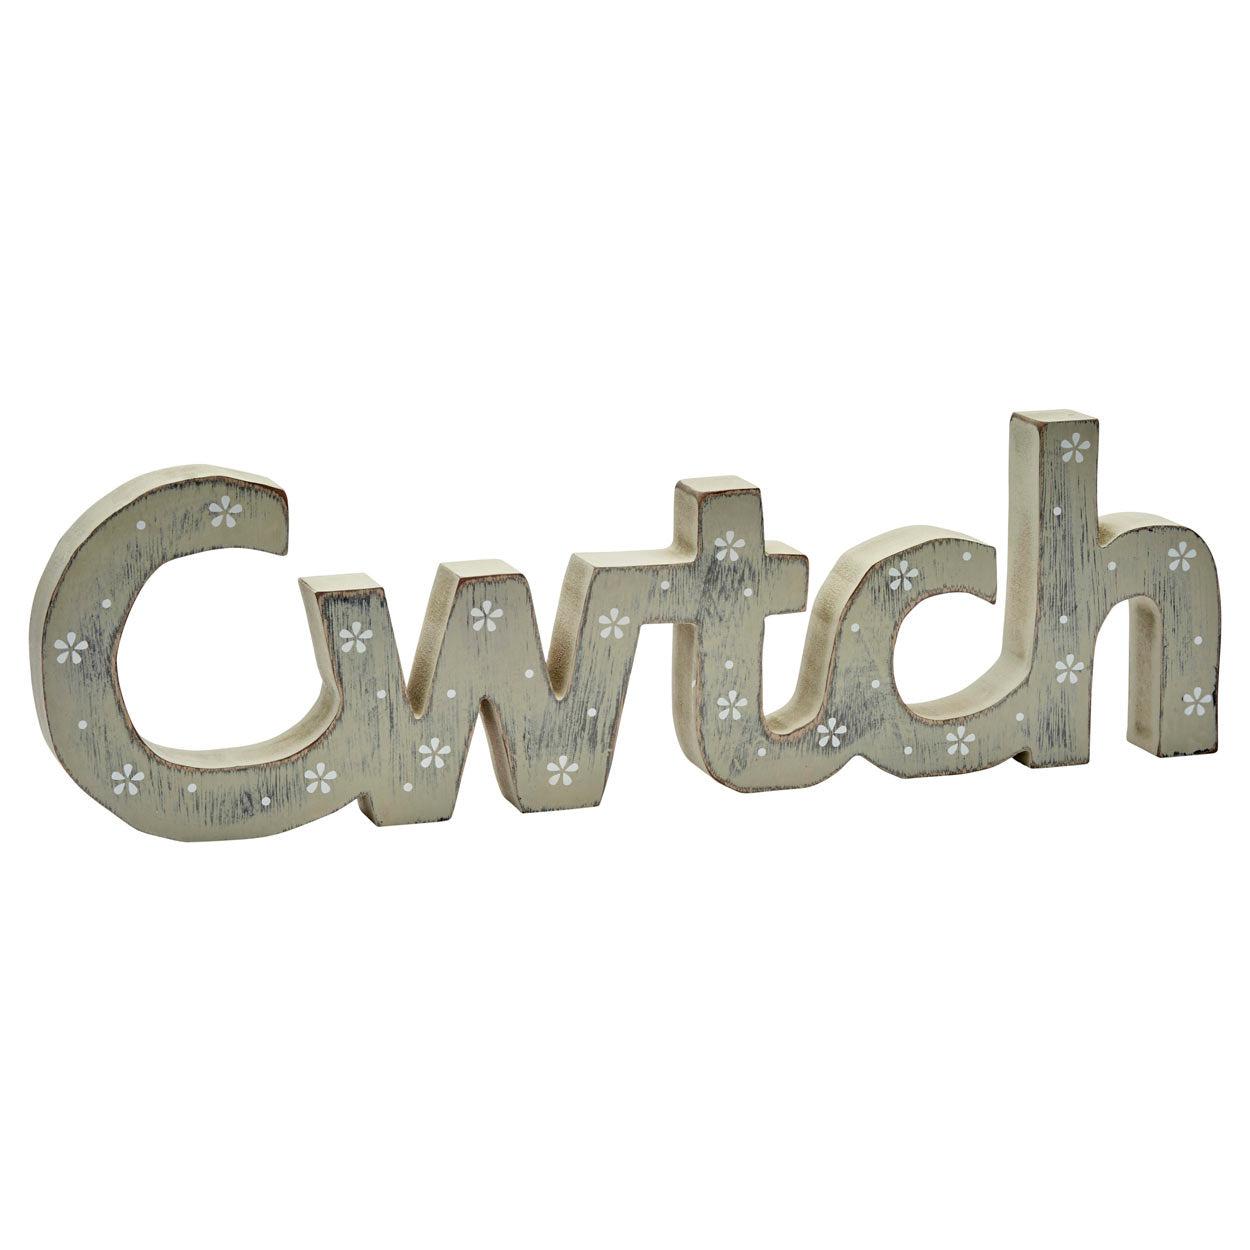 Decoration - Wood - Cwtch / Cuddle